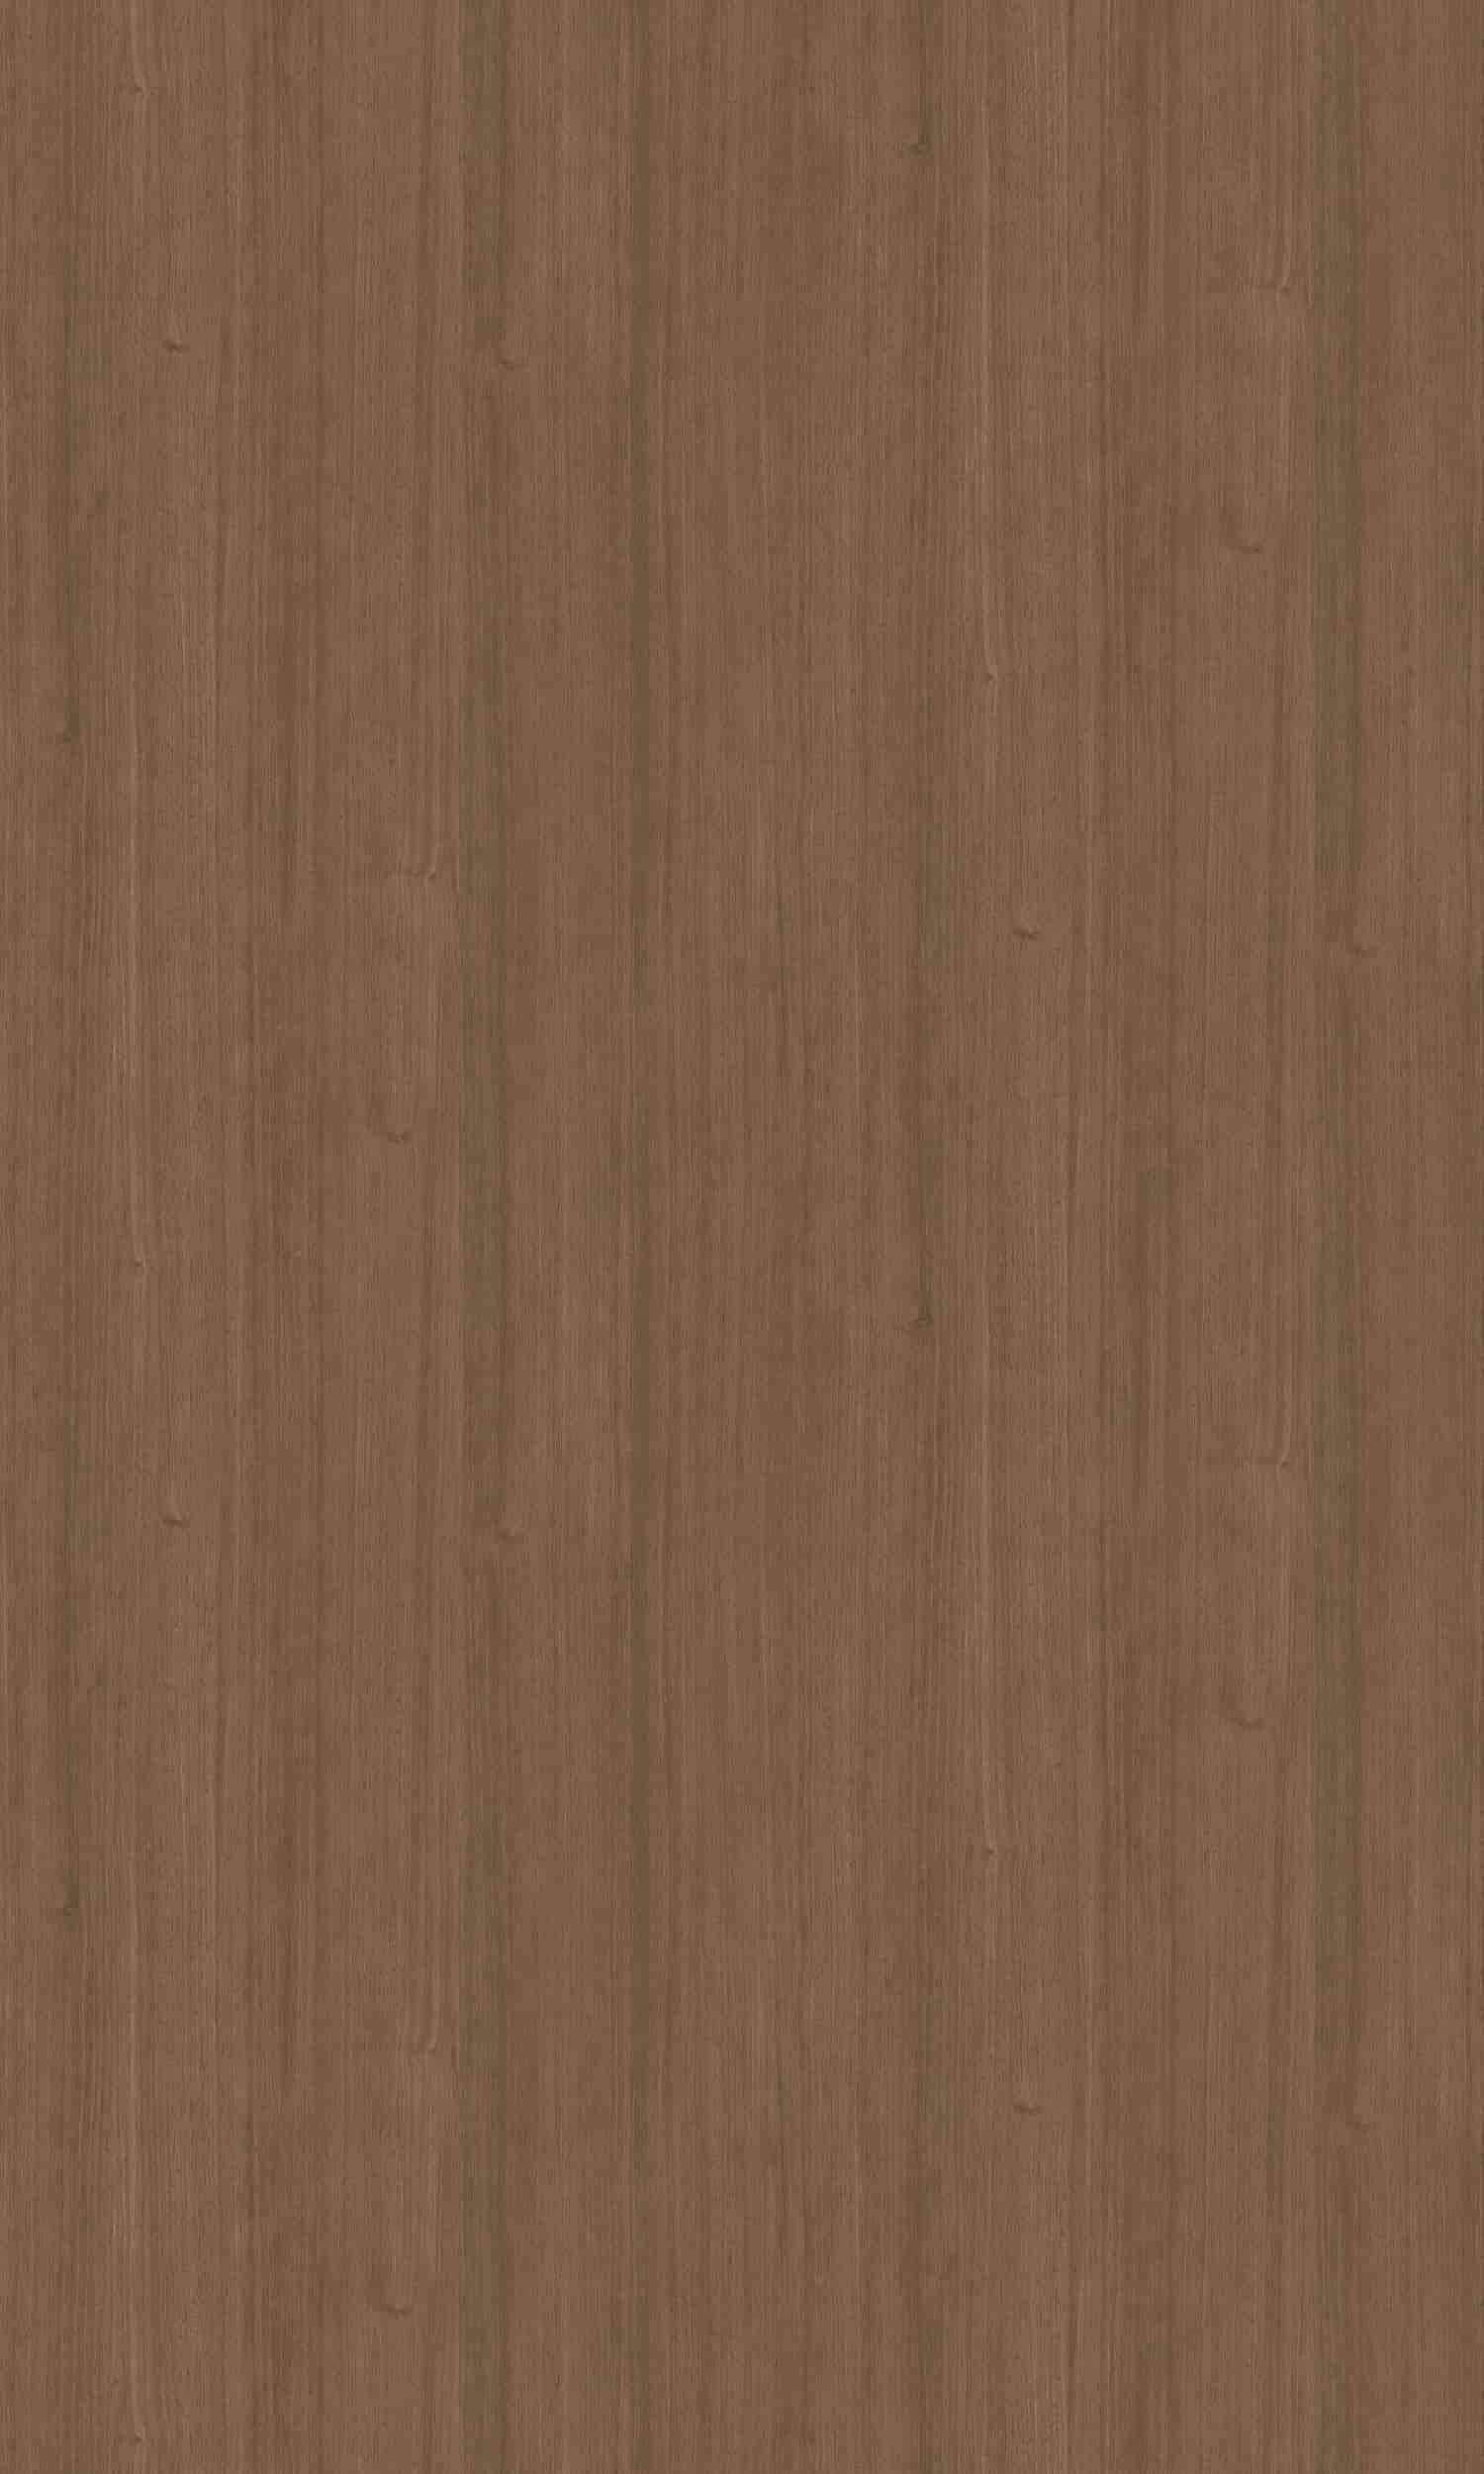 LG Hausys Premium Wood Walnut nw060 Architectural film – 4’x12’ (48 sq. ft.)